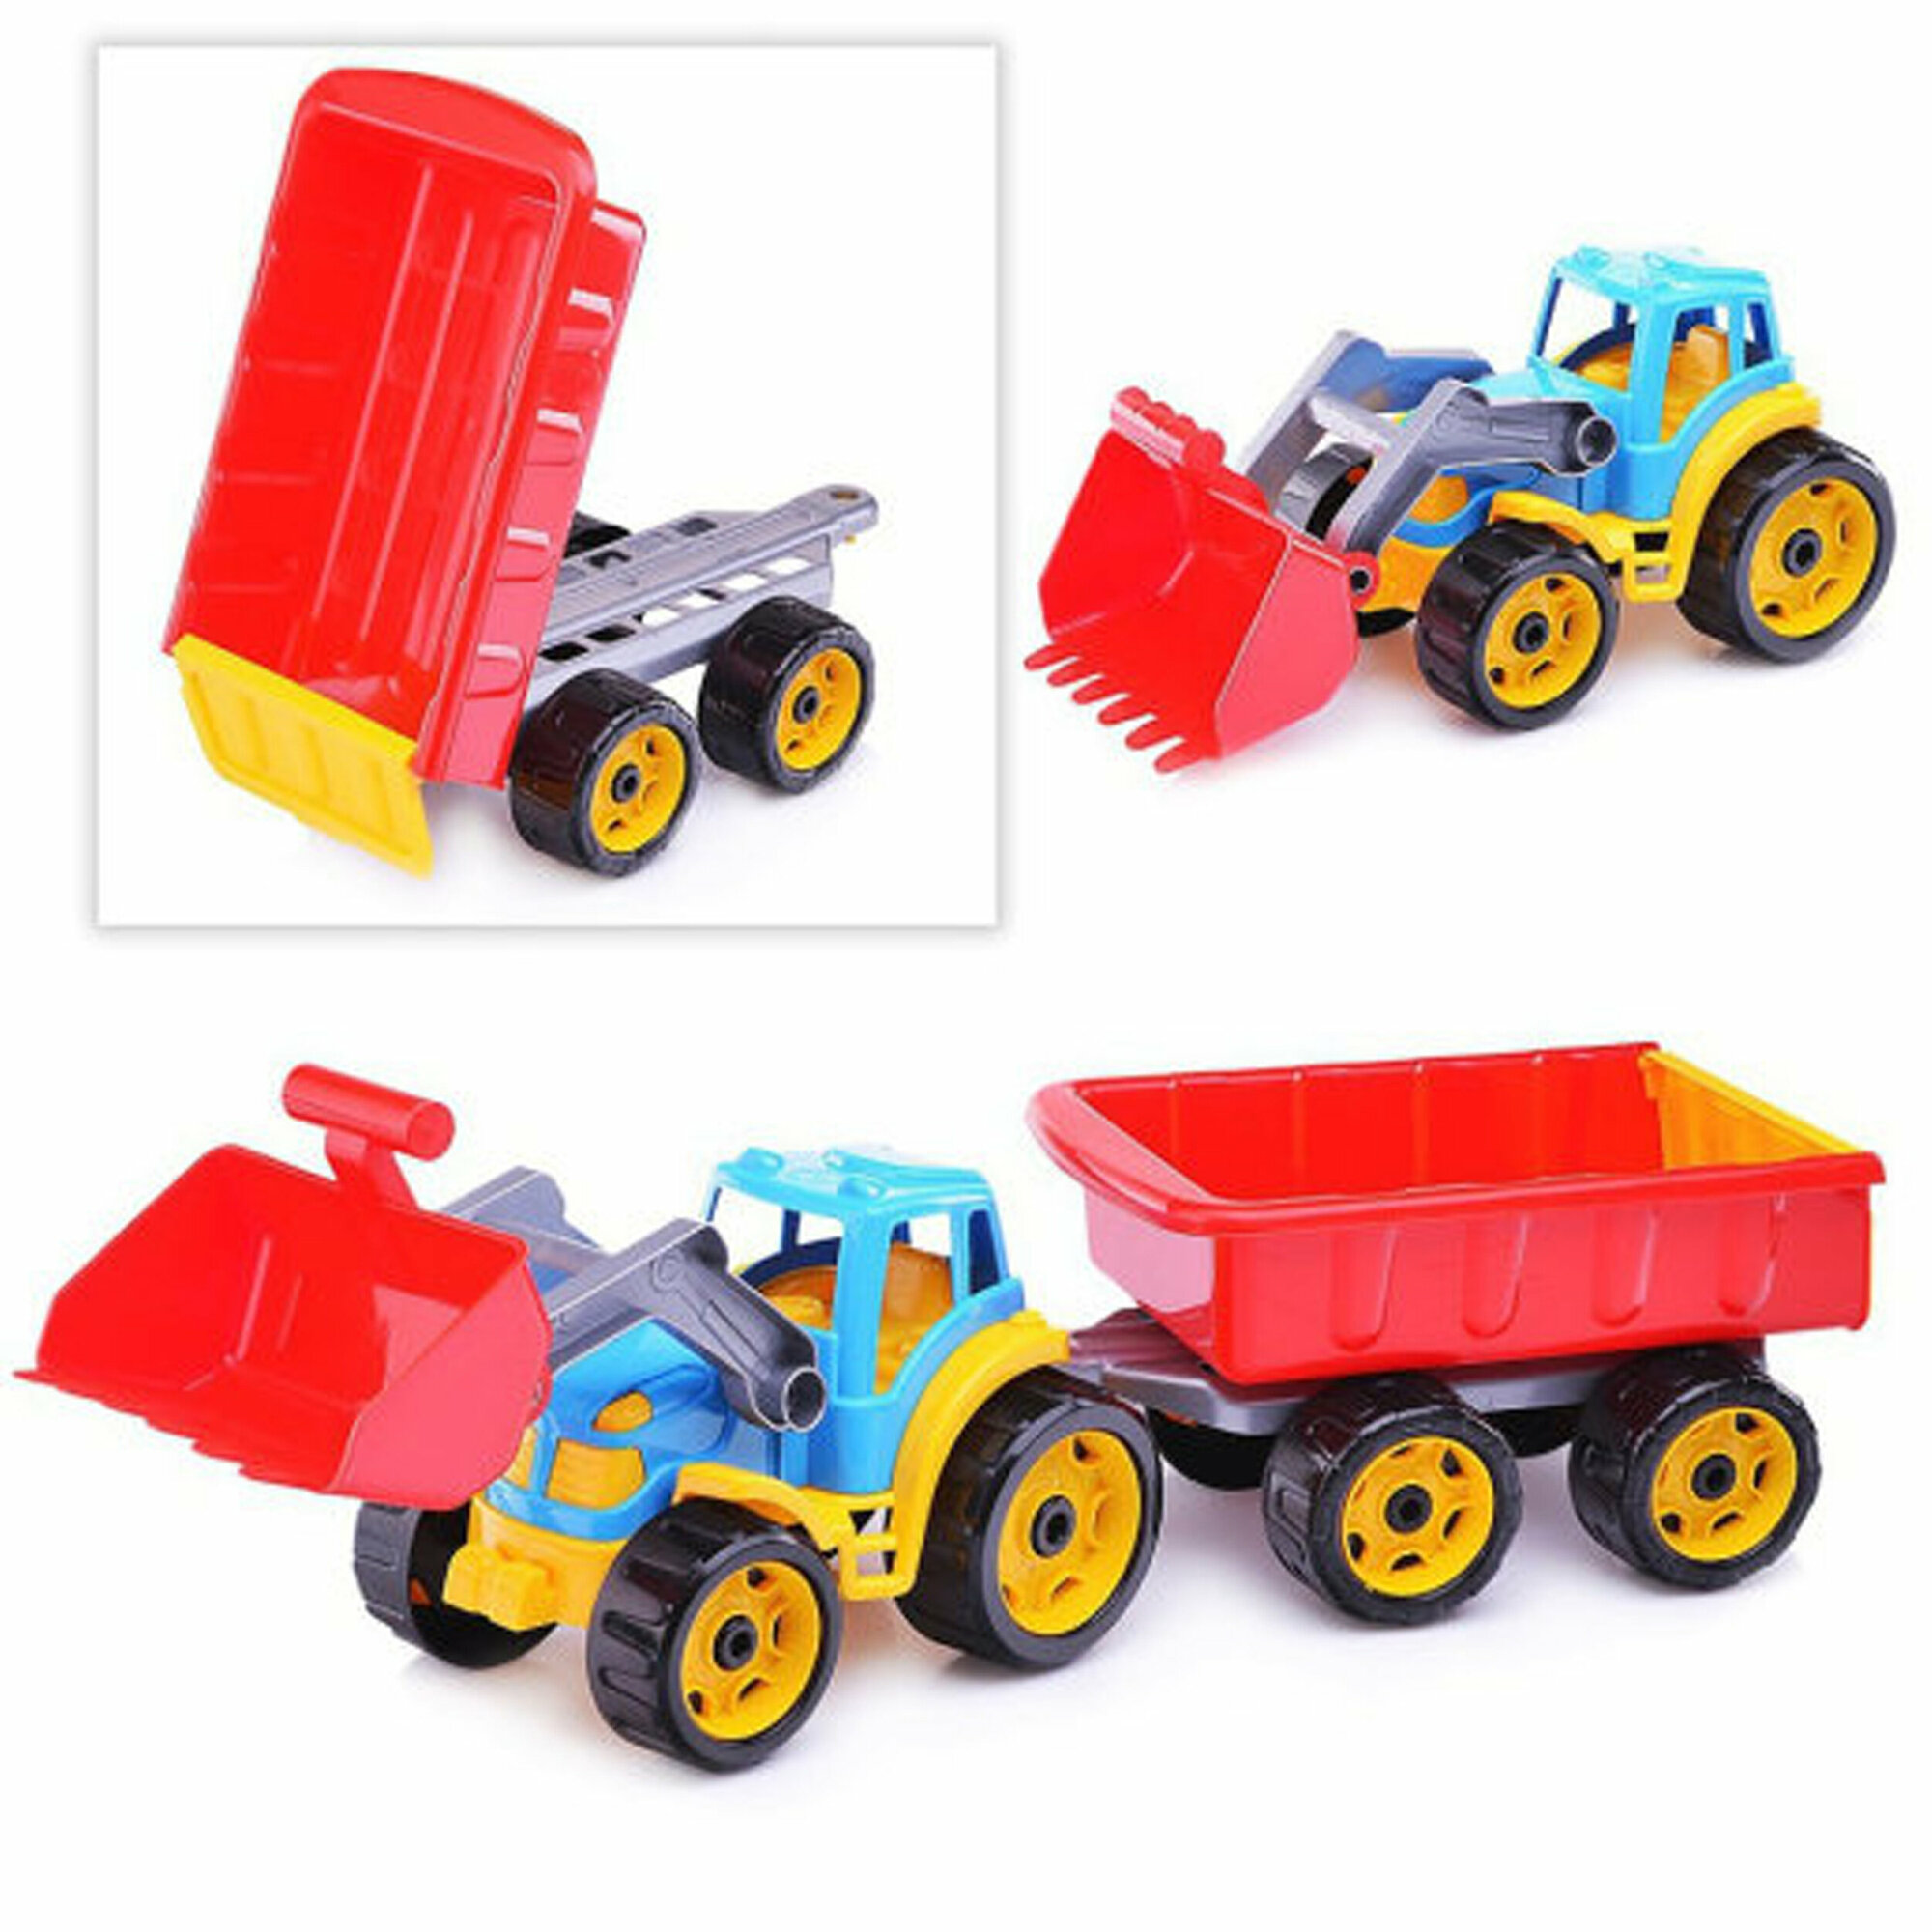 Синий трактор с прицепом 65 см технок экскаватор игрушка / трактор с ковшом